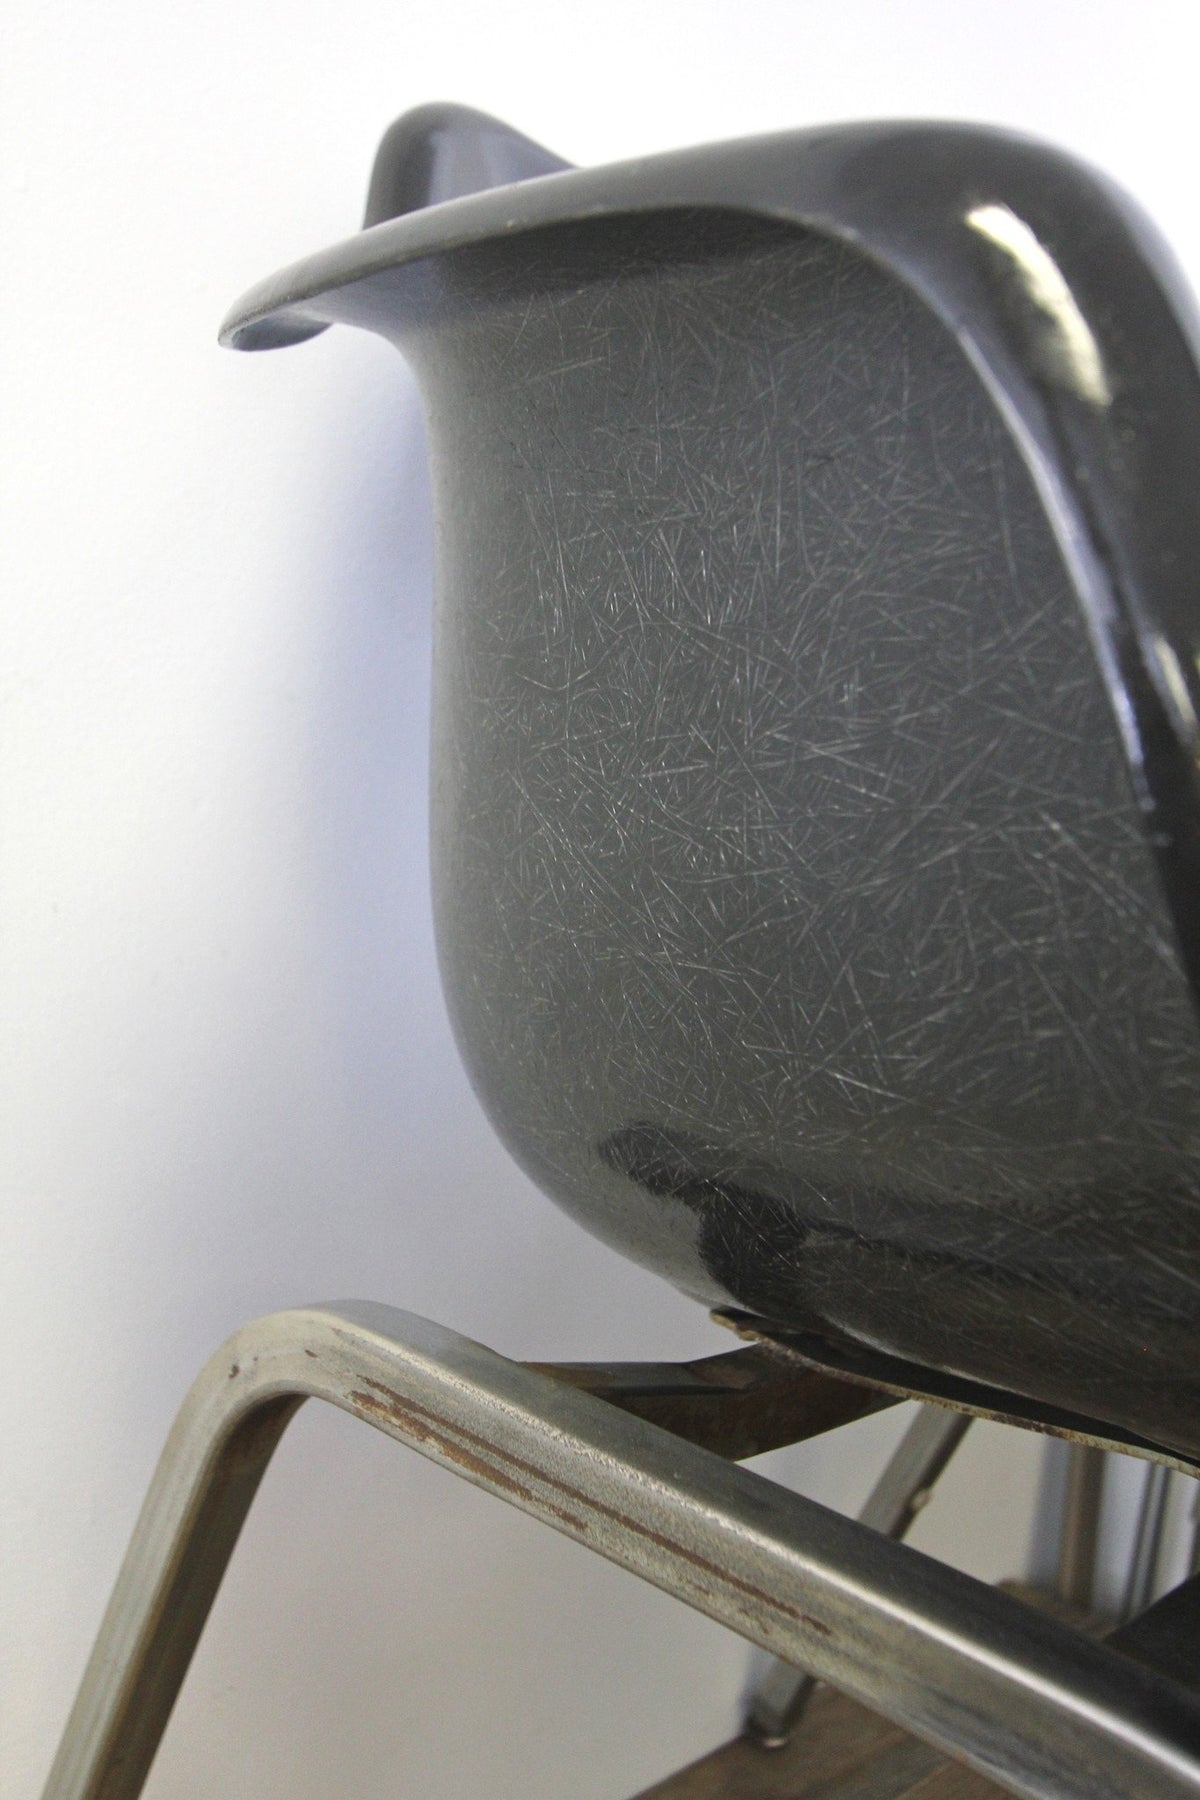 1960s Krueger Fiberglass Shell Arm Chair - Diamonds & Rust